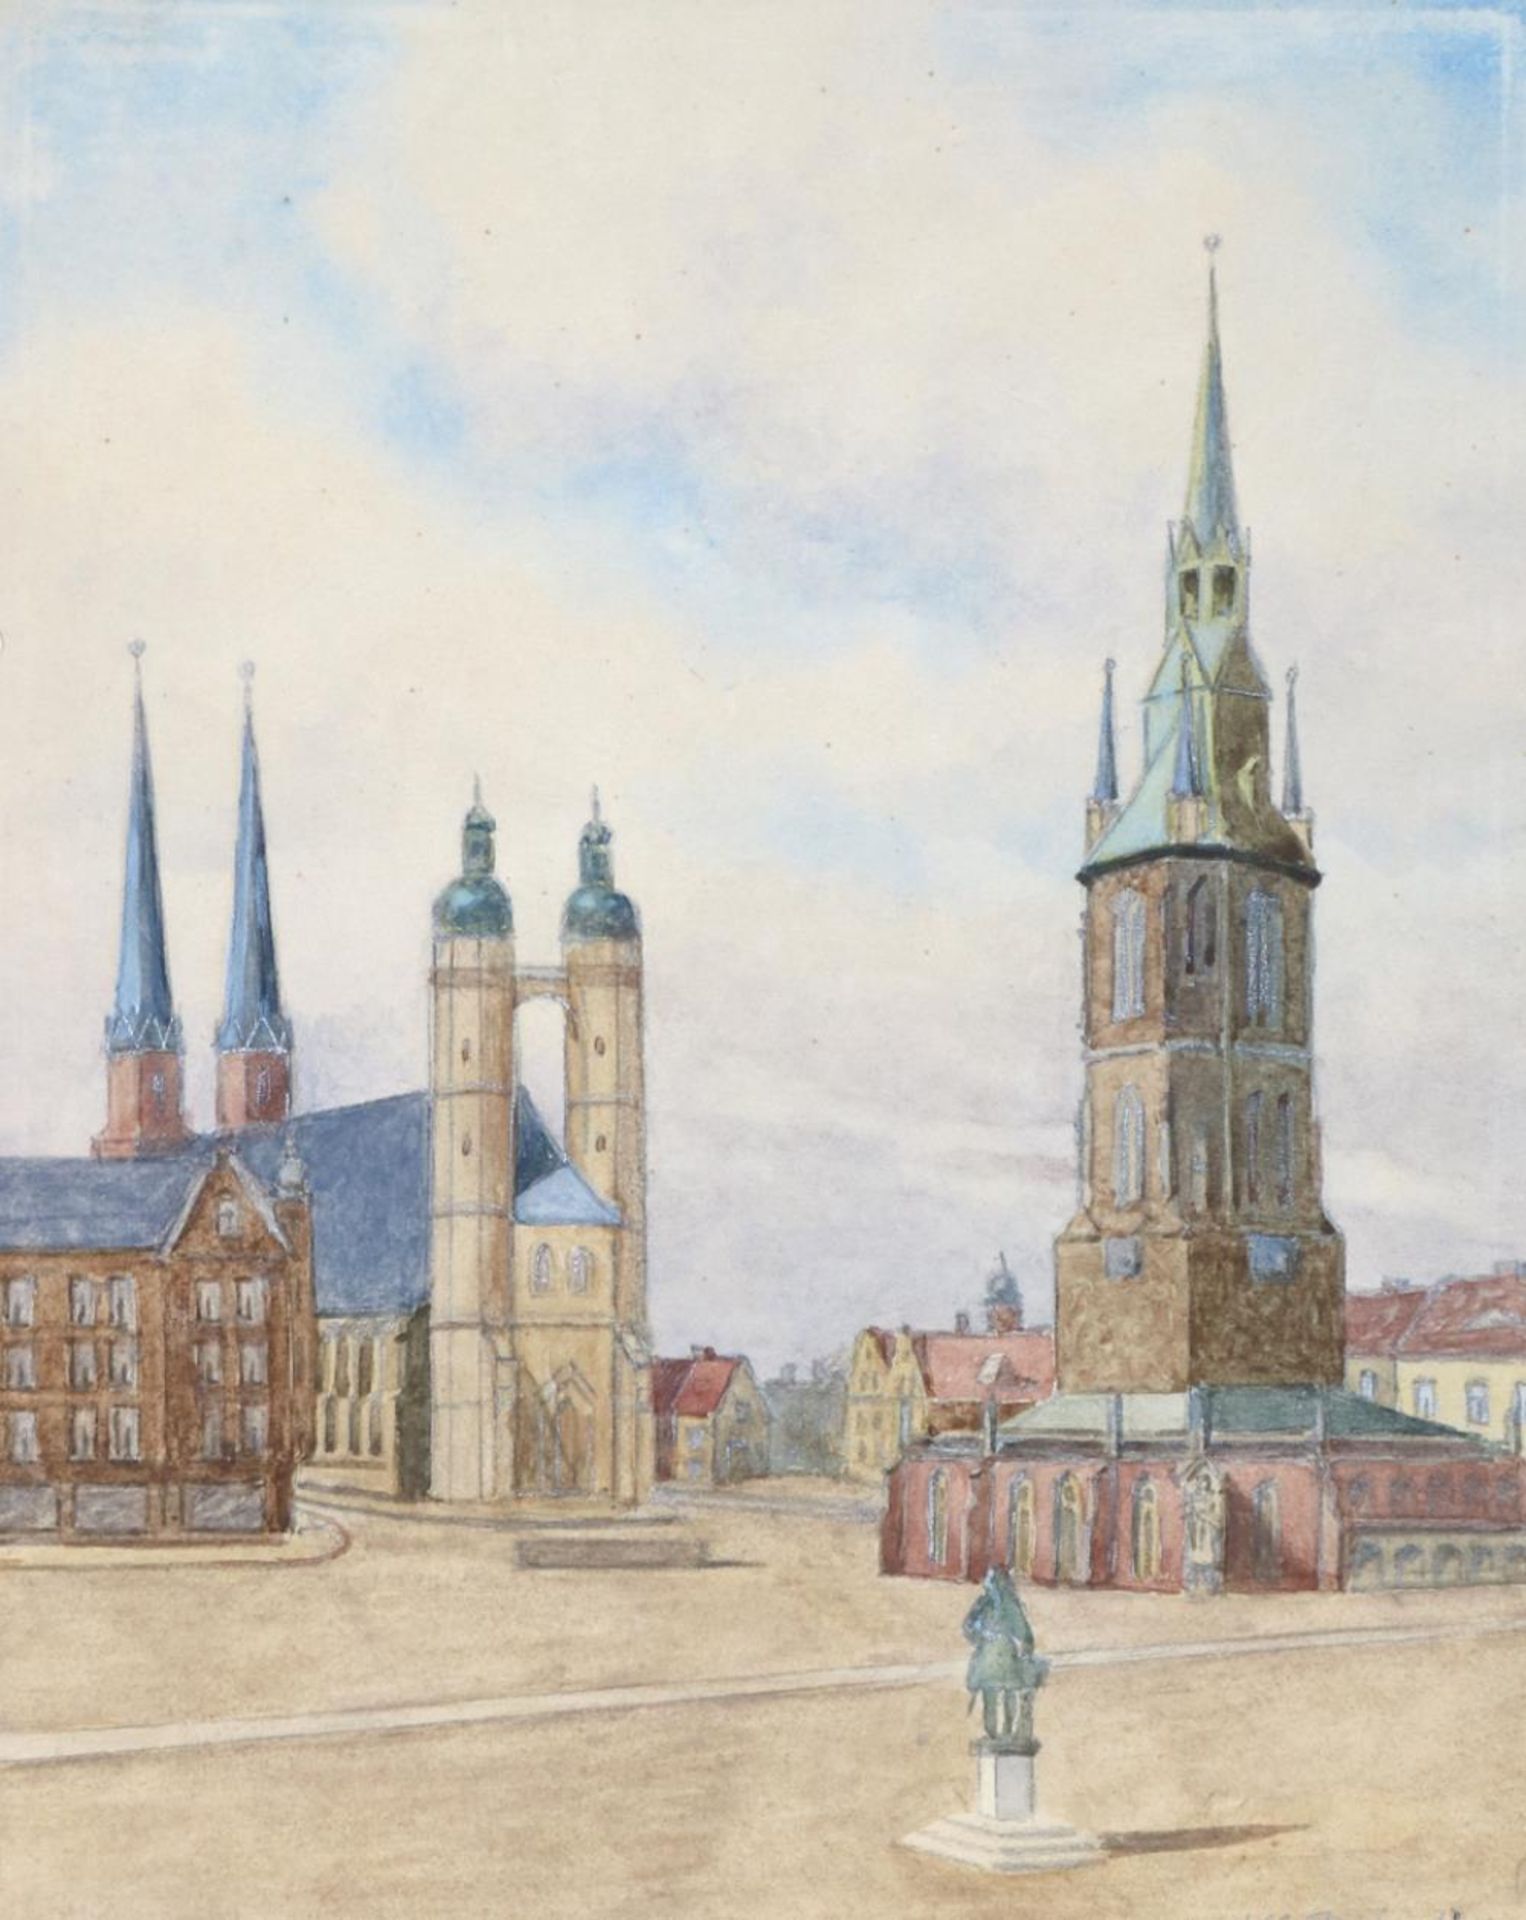 Halle/Saale.Ansicht des Marktplatzes. Aquarell über Bleistift auf Papier, sign. J.M. Reichardt. Wohl